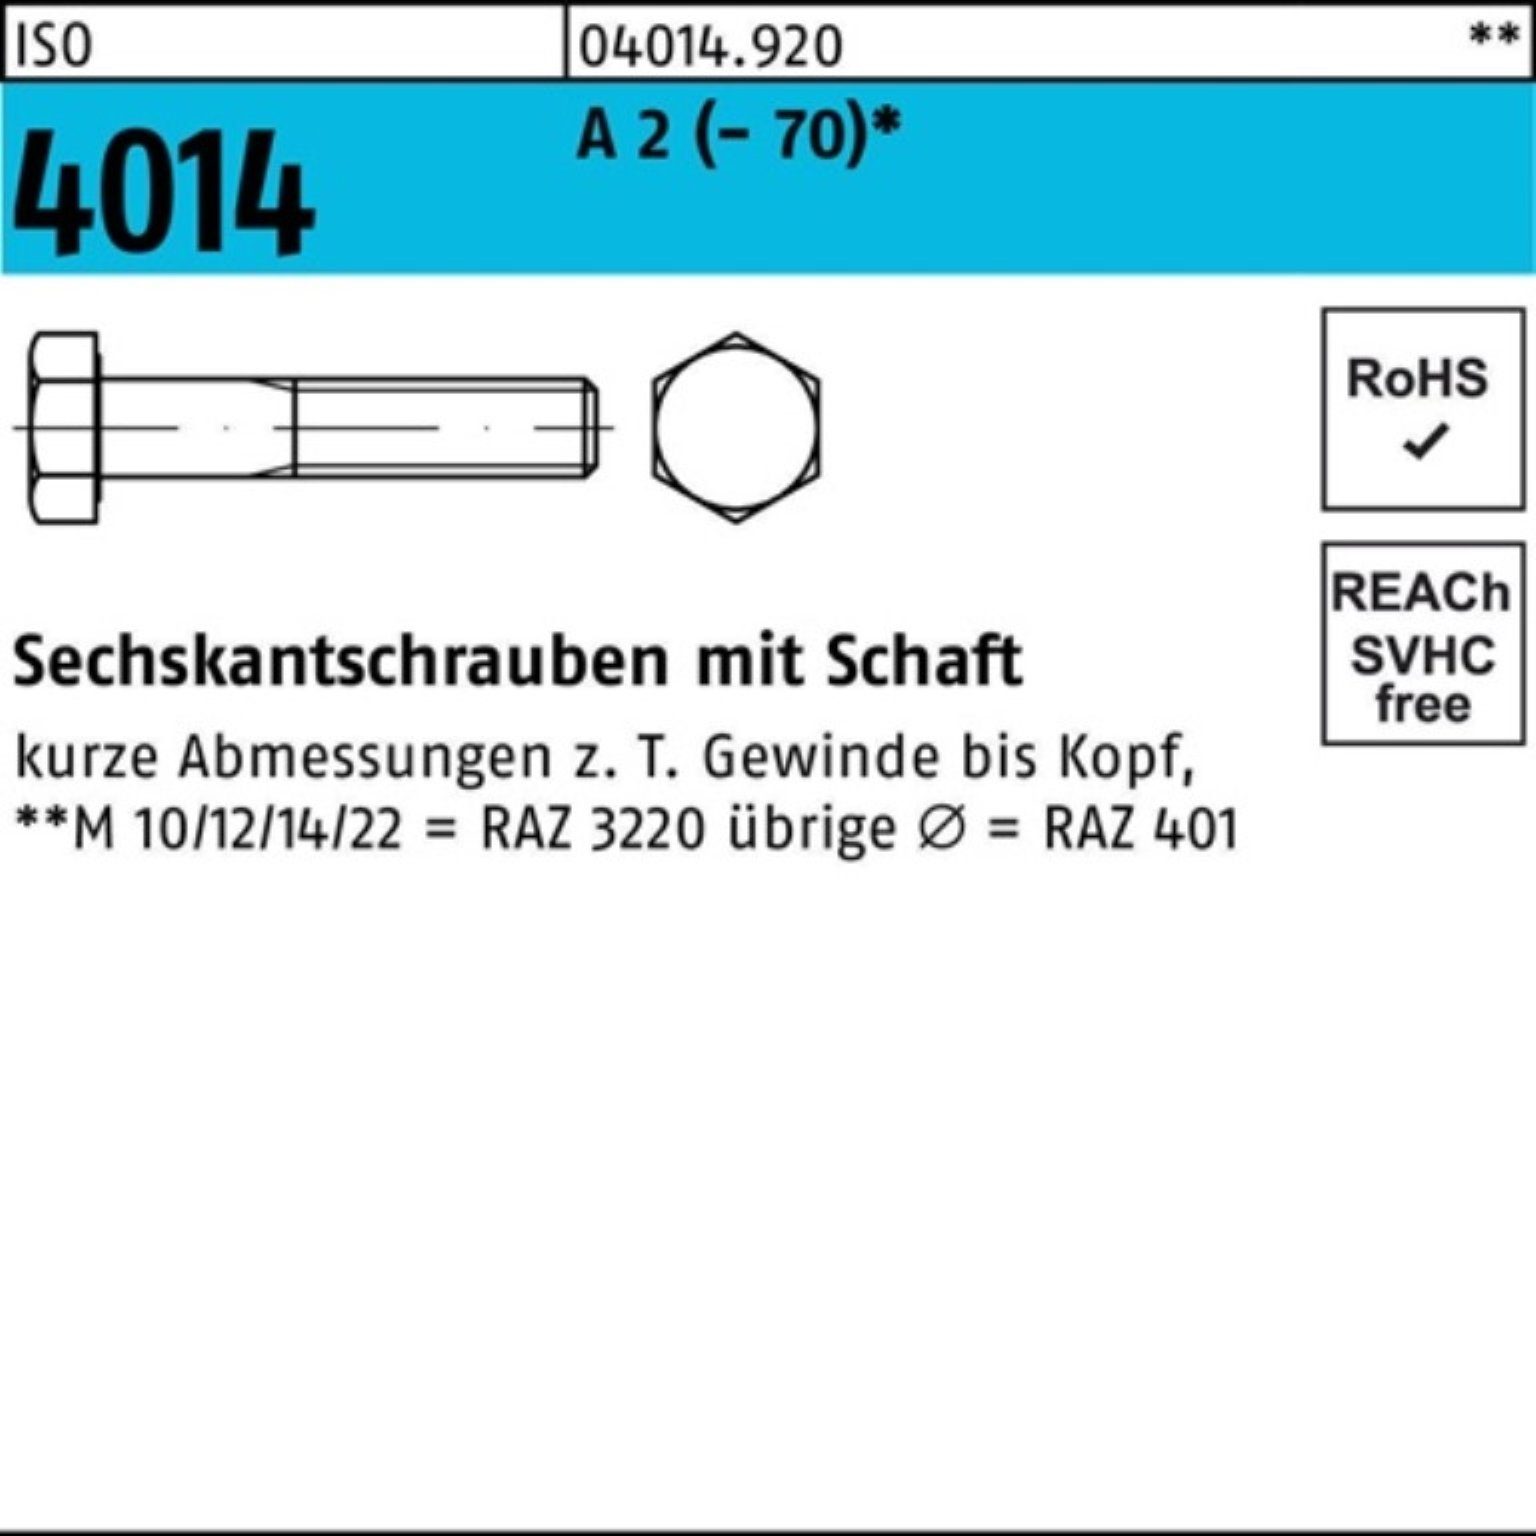 Bufab Sechskantschraube 100er A Sechskantschraube Pack 1 220 M12x 2 4014 Schaft ISO (70) St